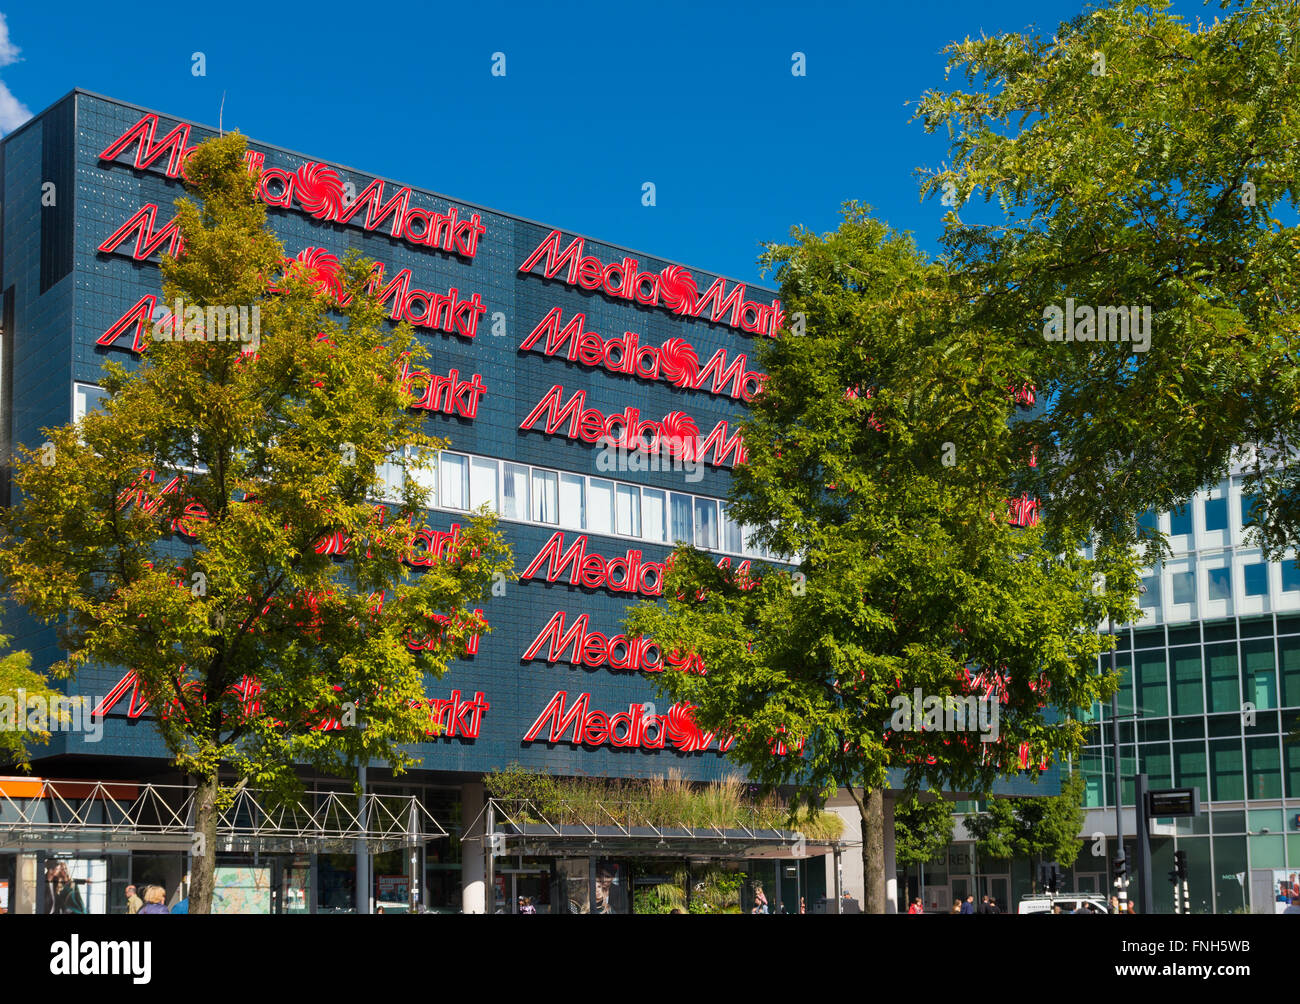 EINDHOVEN, Pays-Bas - le 26 août 2015 : l'extérieur de la Media Markt d'appareils électroniques. Media Markt est une chaîne de distribution allemand th Banque D'Images